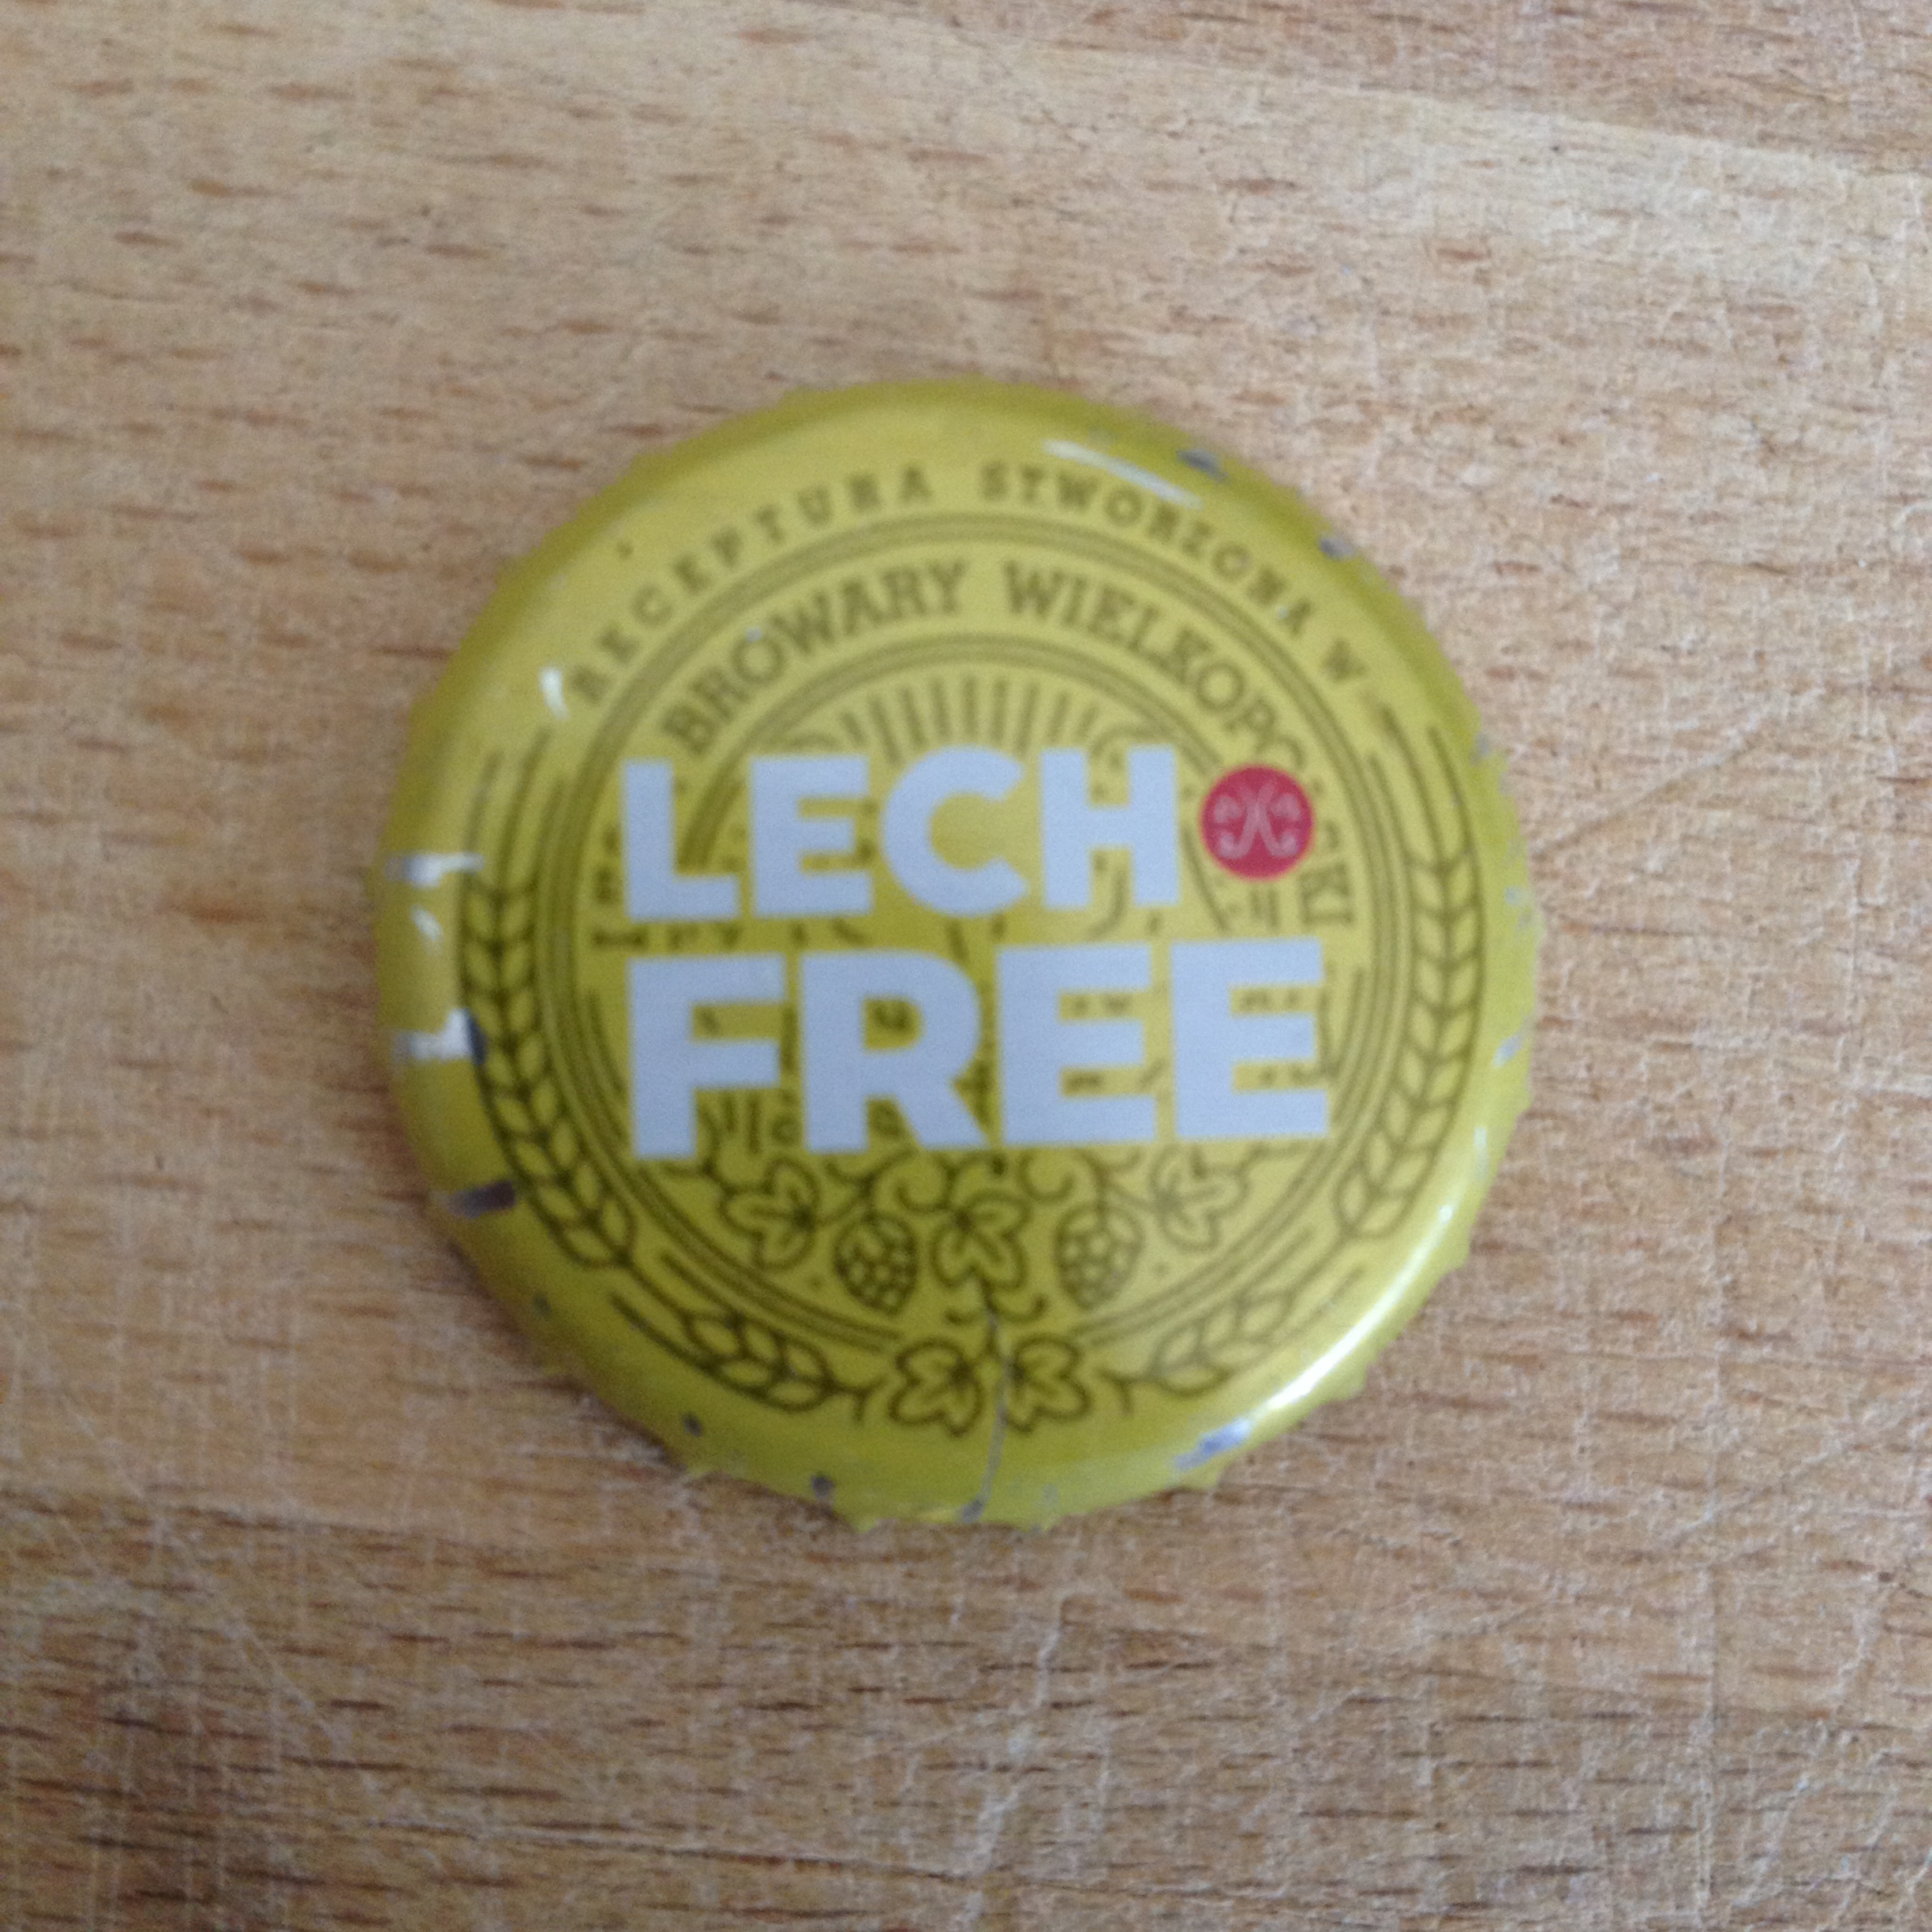 Lech Free